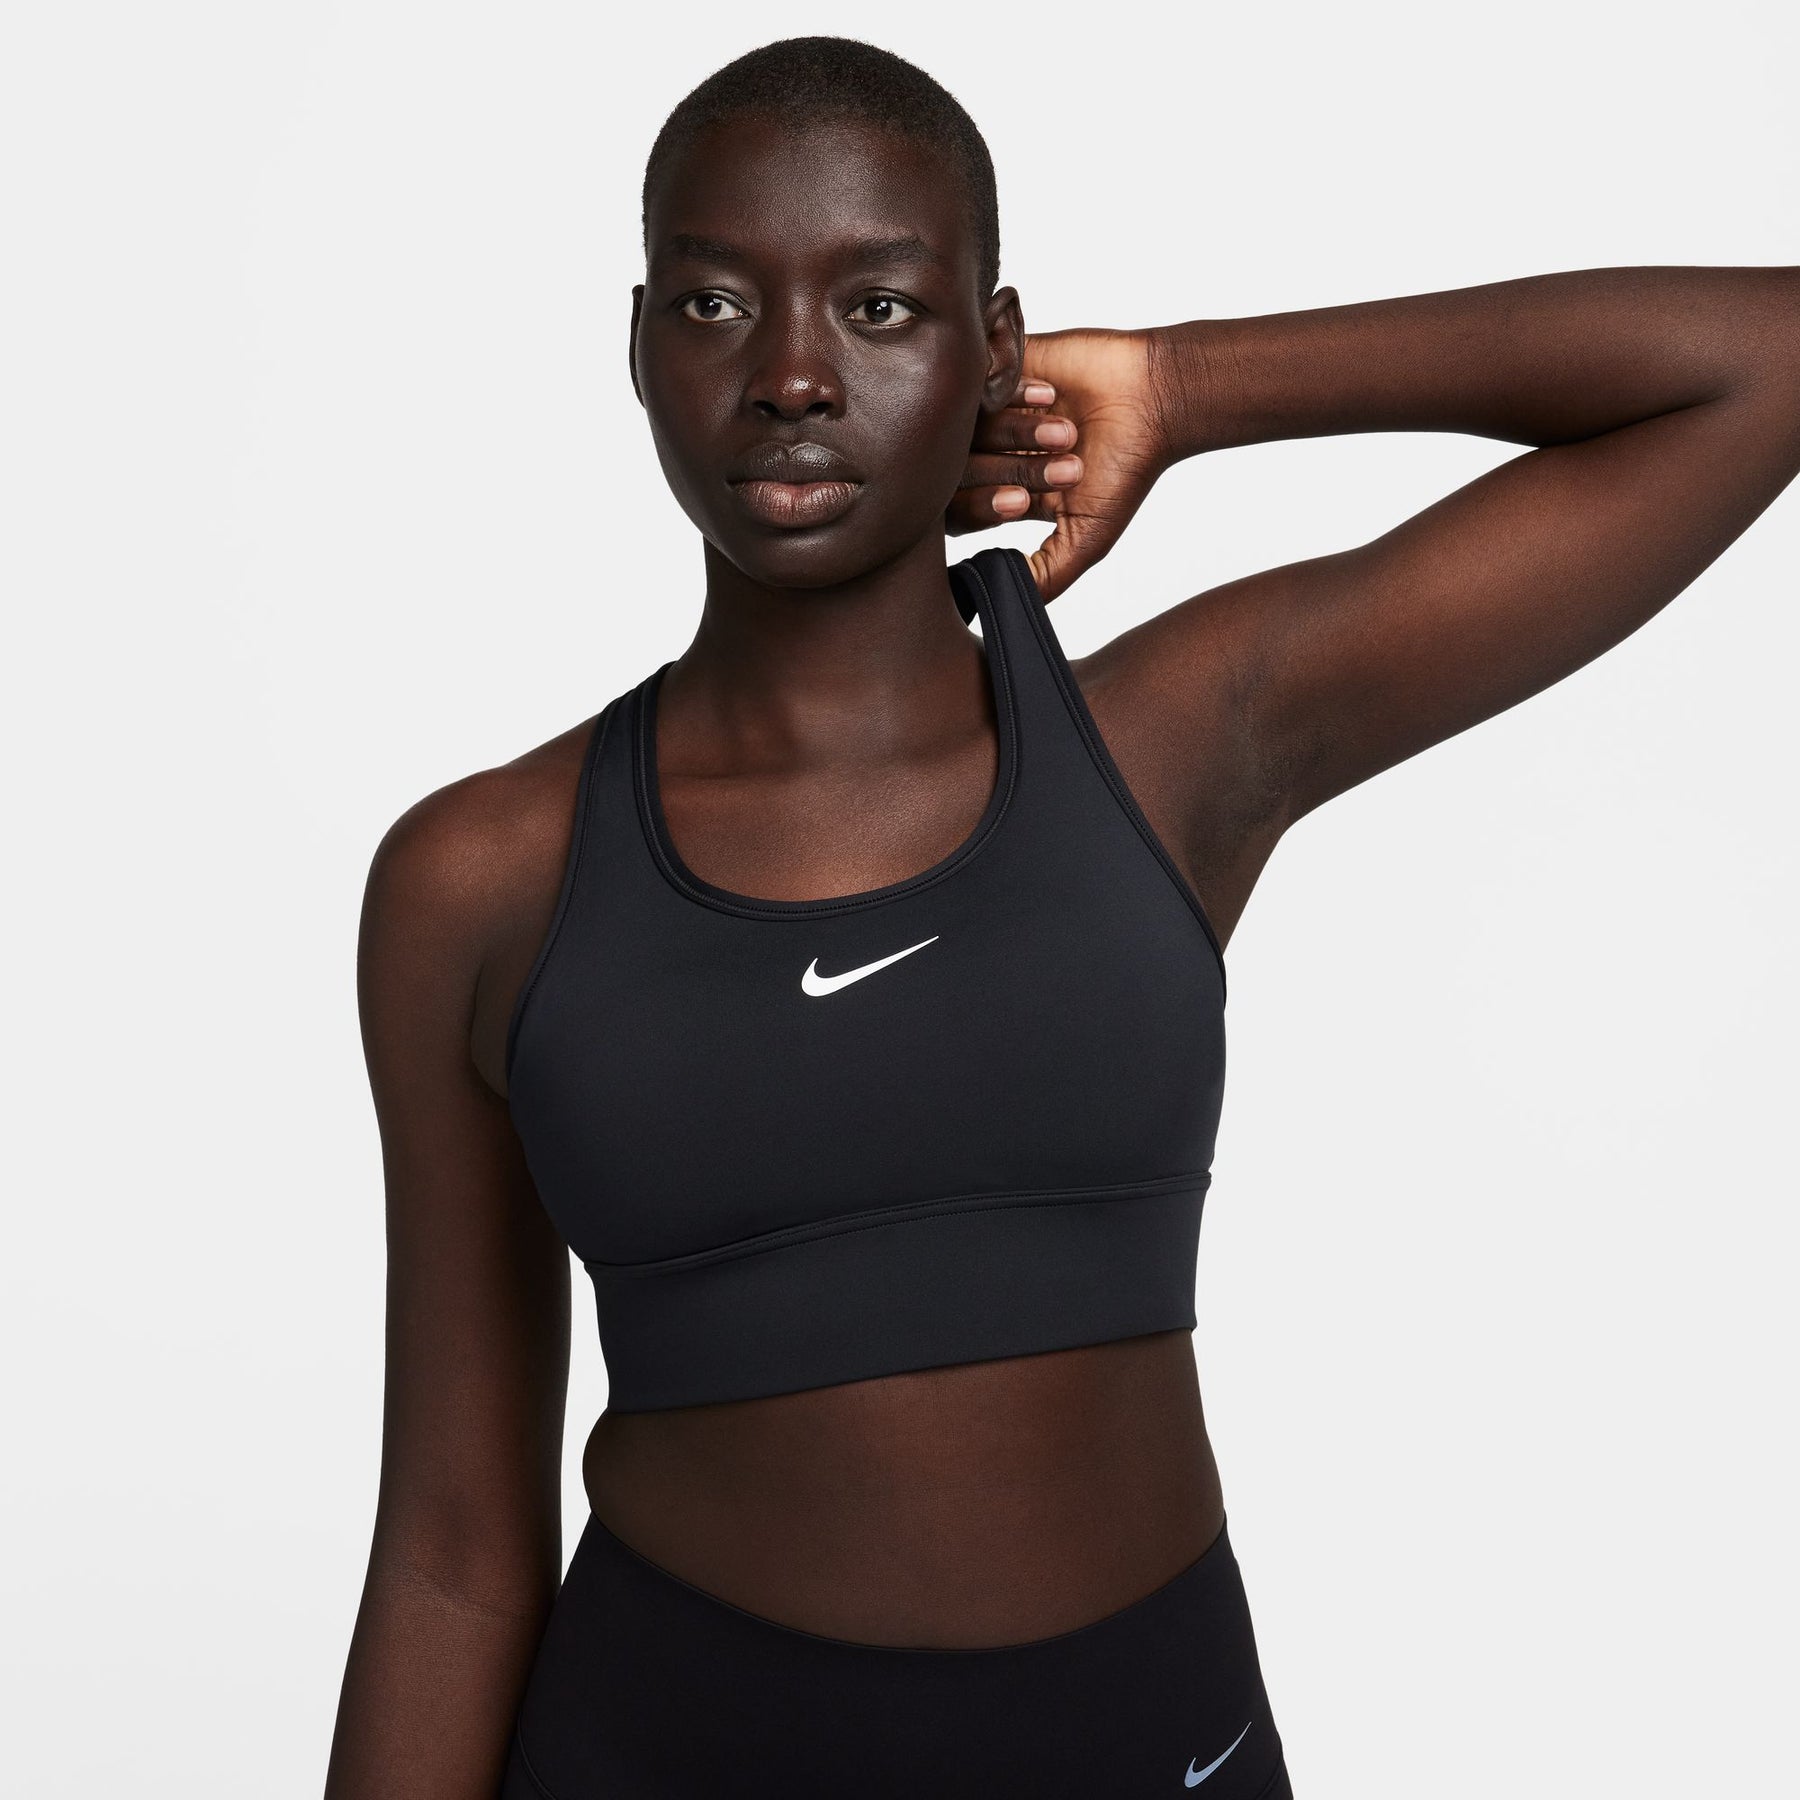 Nike Training Dri-FIT Swoosh medium support sports bra in black